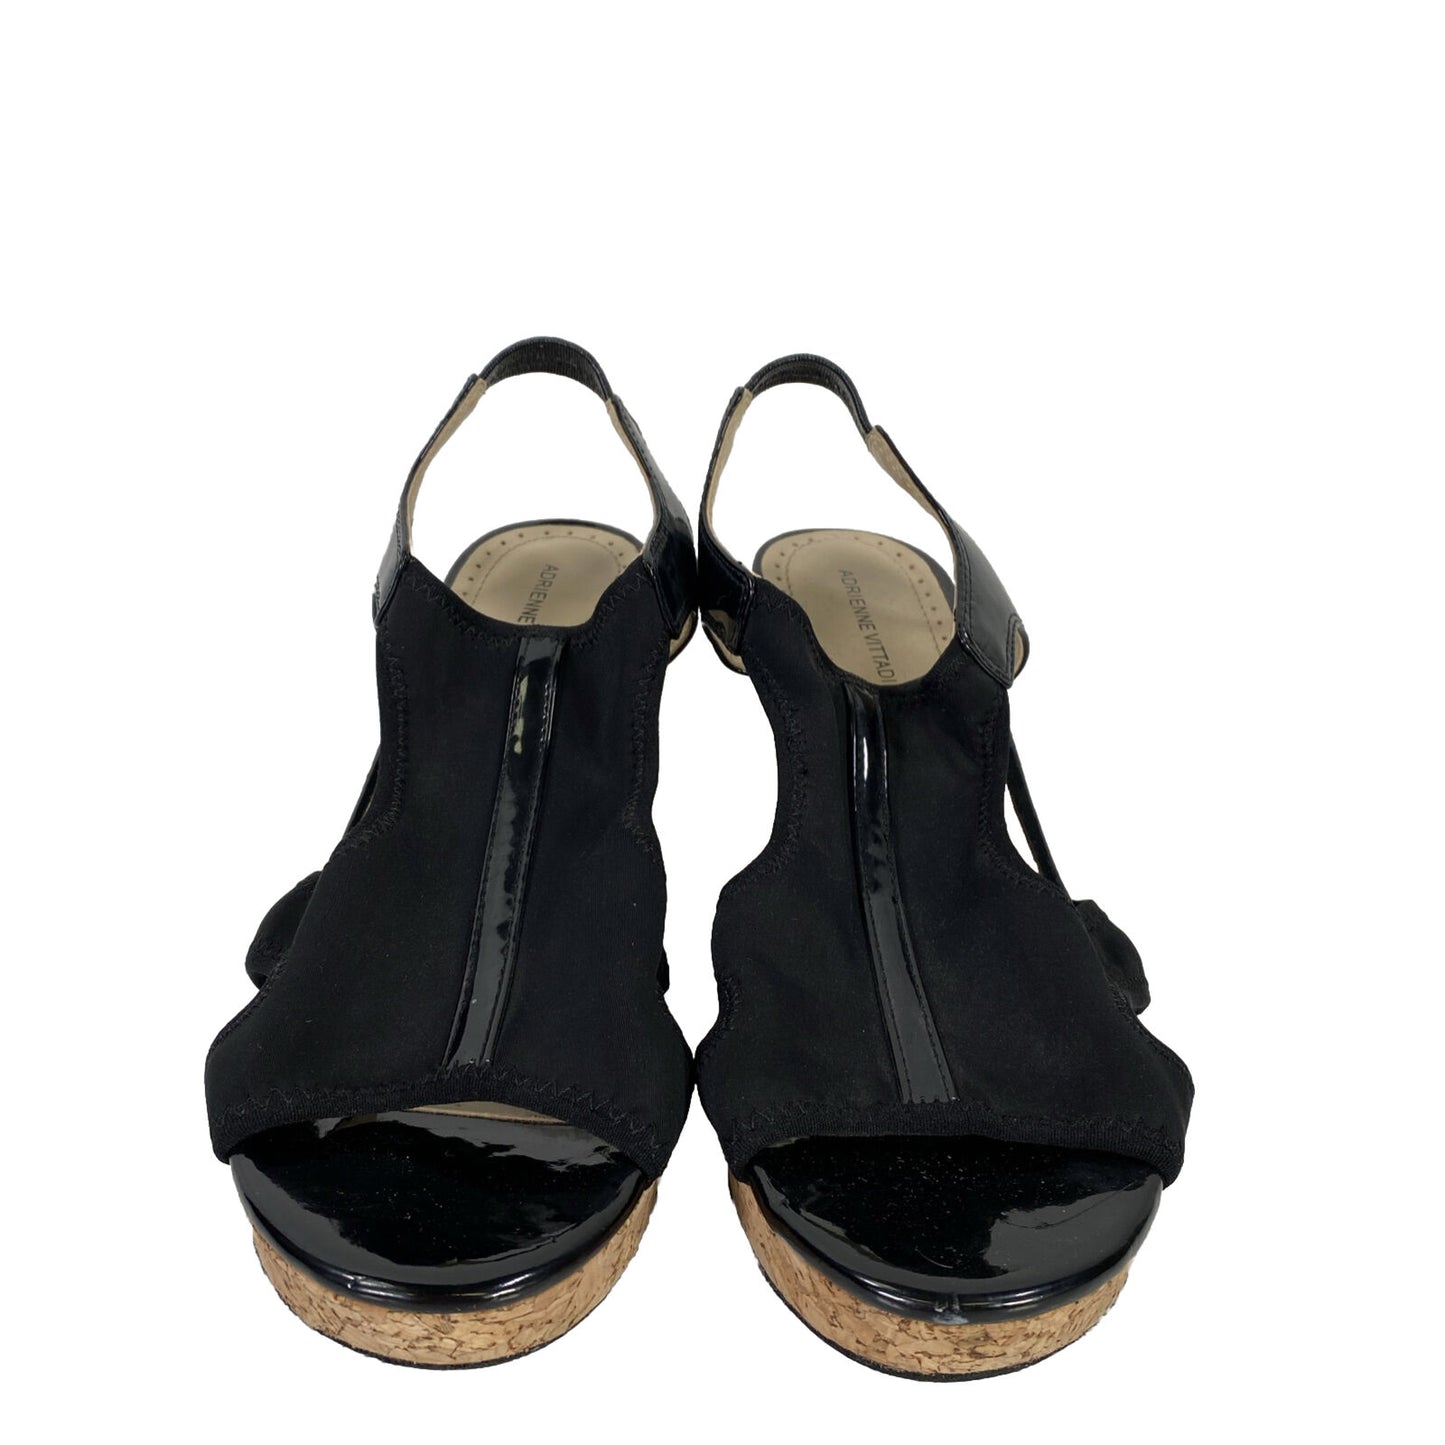 Adrienne Vittadini Women's Black Cork Wedge Slingback Wedge Sandals - 9